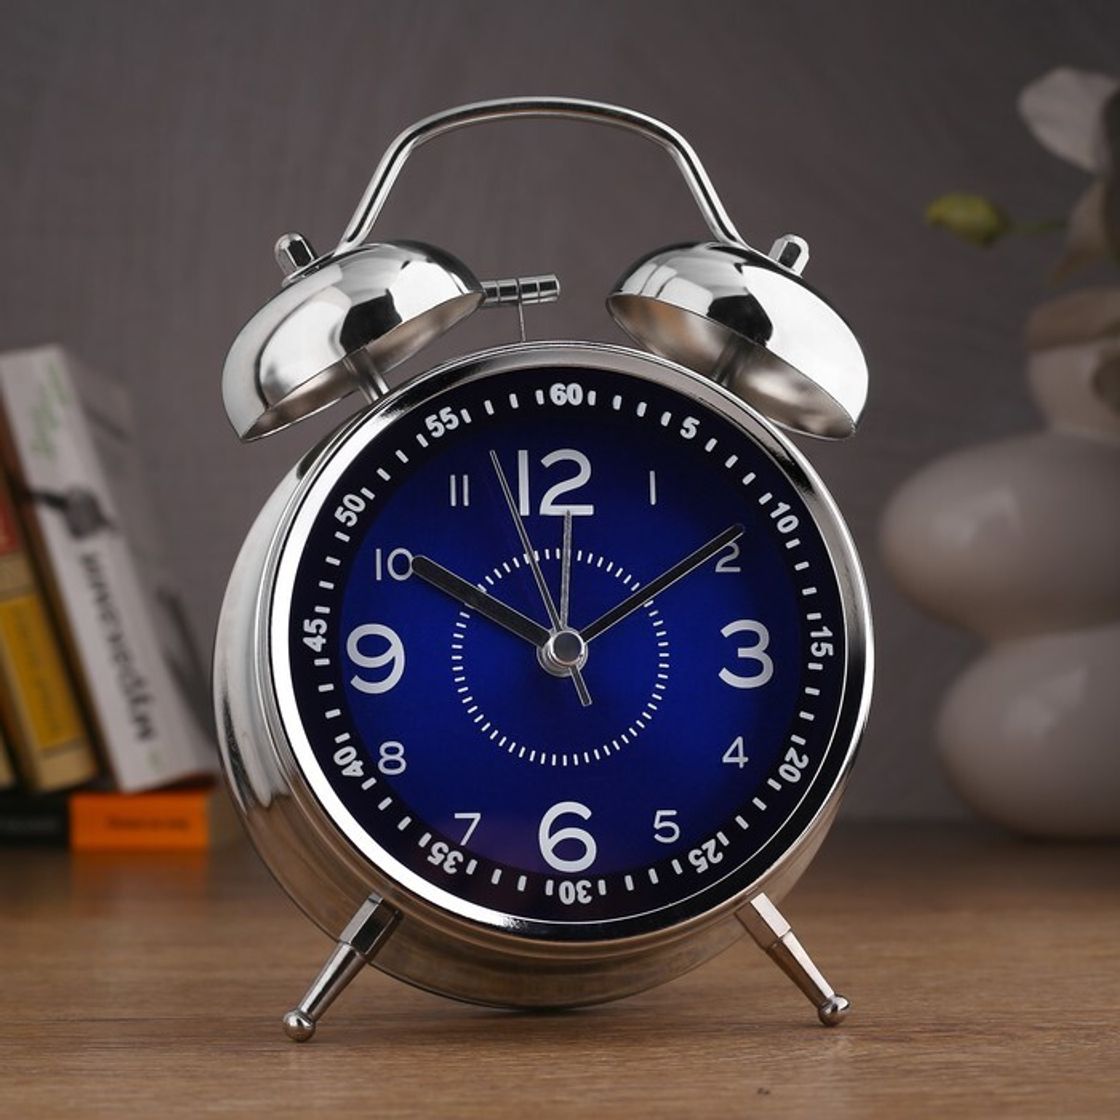 Будильник 17 часов. Стильный голубой будильник. Будильник 17 века. Часы будильник, синий.